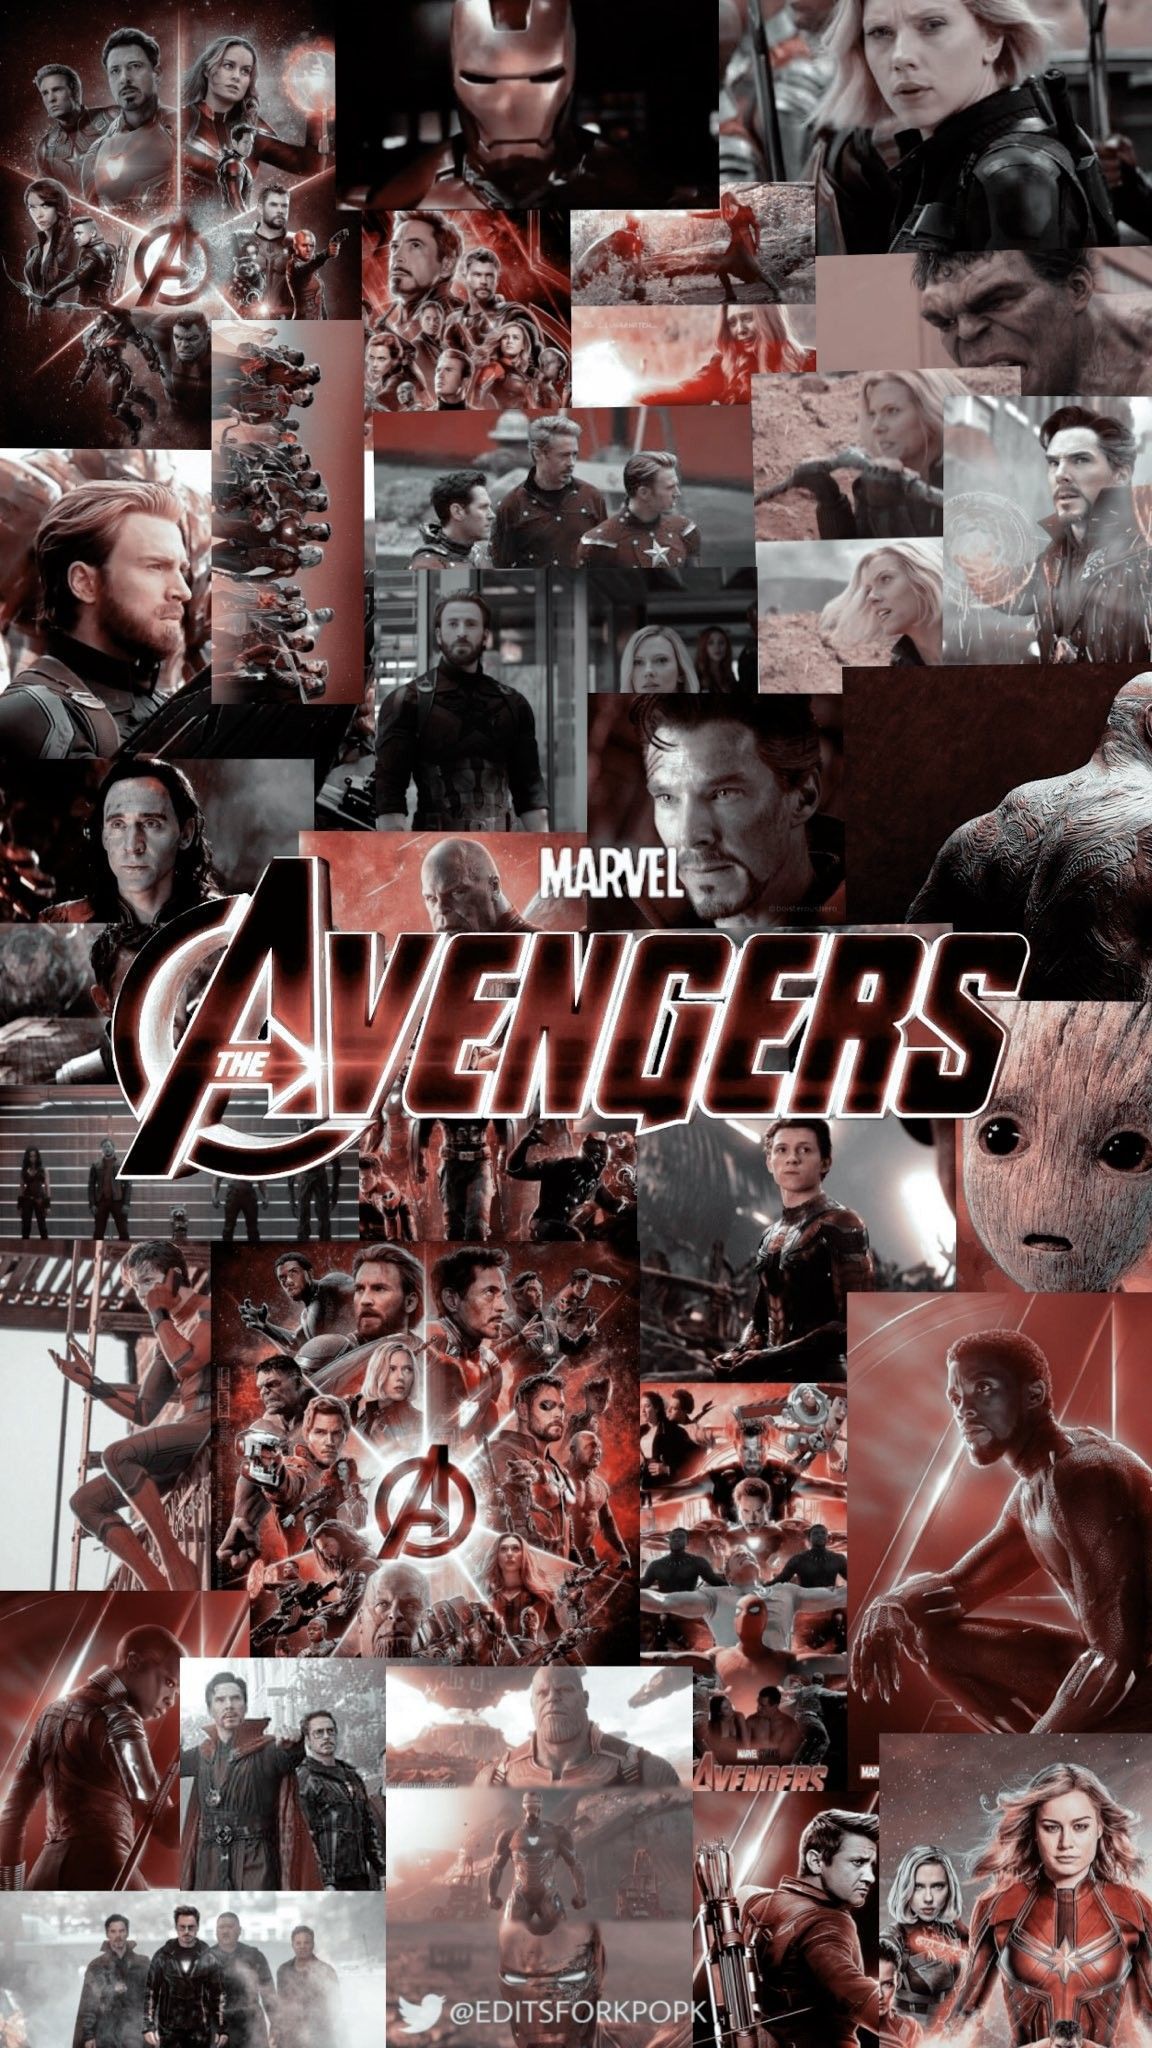 The Avengers wallpaper for mobiles and desktops - Marvel, Avengers